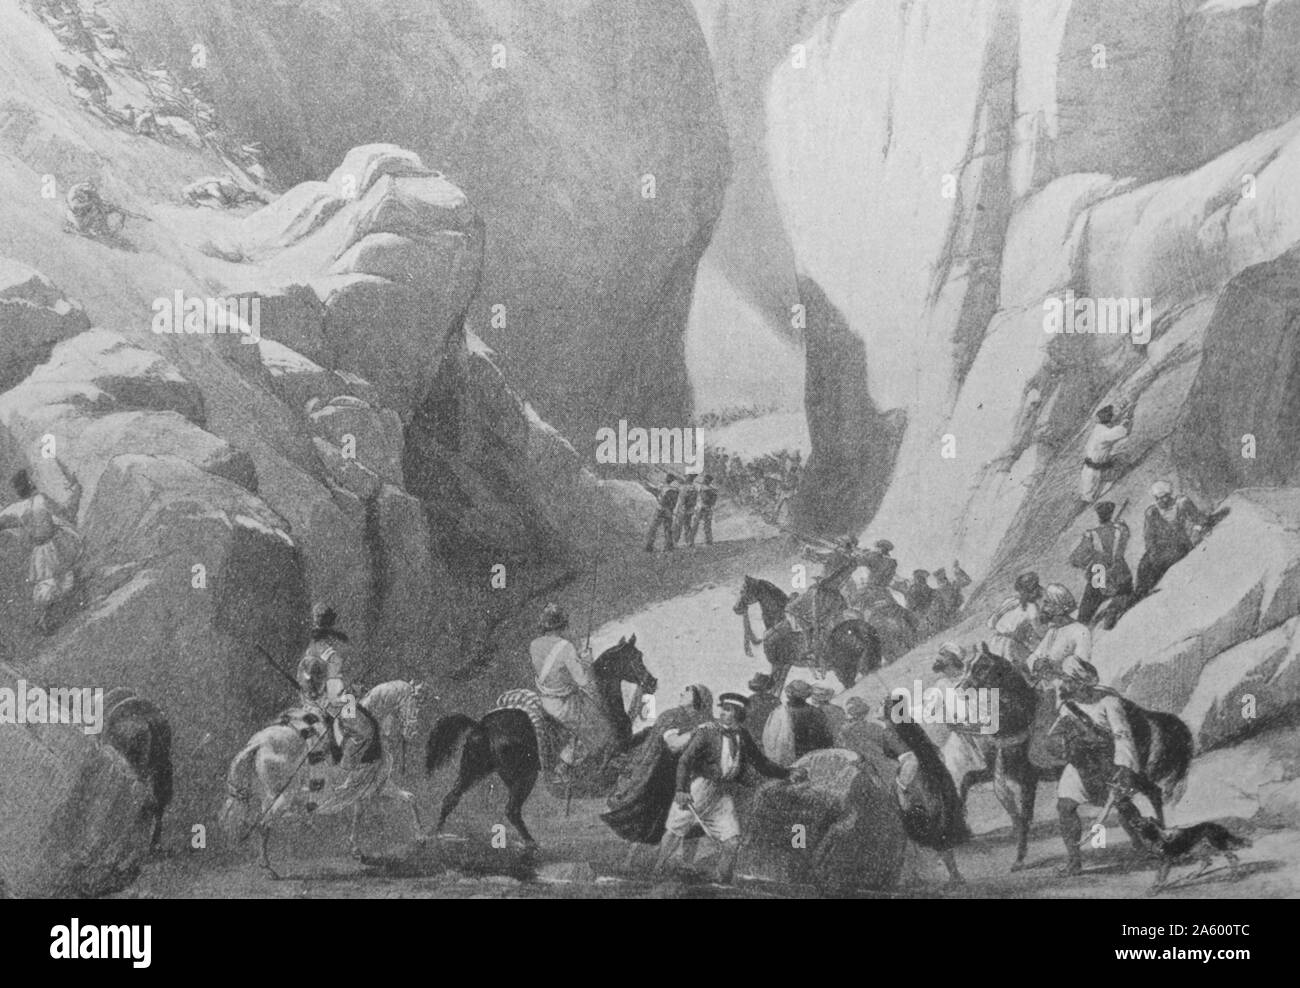 La gente delle montagne: mostra l'influenza dell'ambiente di carattere da Alexander Johnston (1815-1891) un pittore scozzese, noto per il genere e la storia dipinti. Datata del XIX secolo Foto Stock